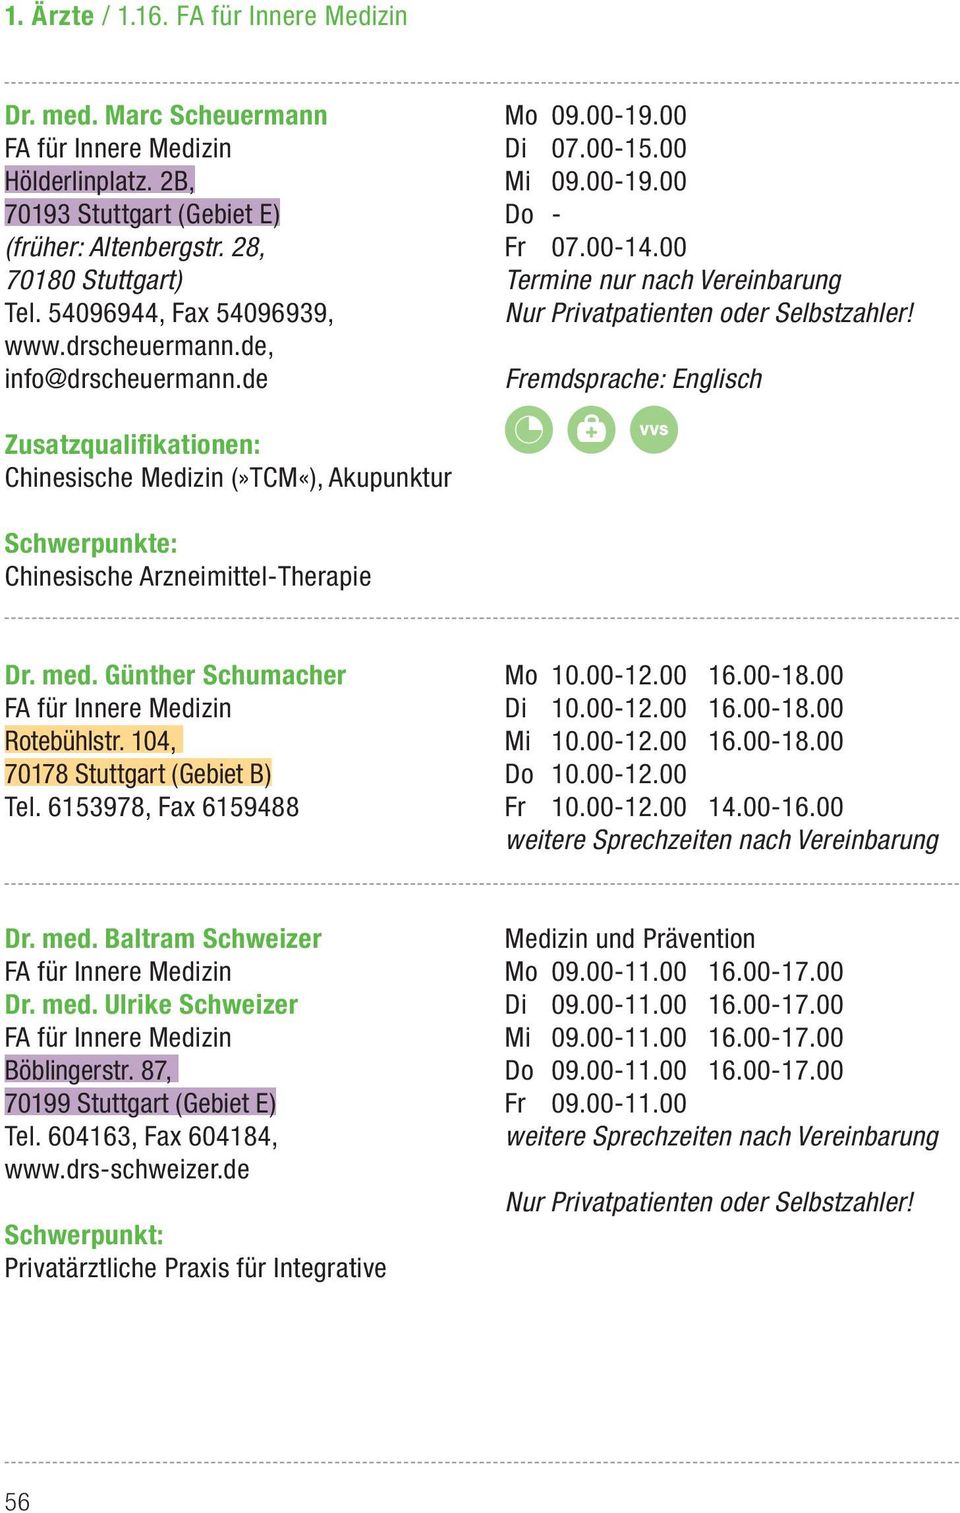 Chinesische Medizin (»TCM«), Akupunktur Chinesische Arzneimittel-Therapie Dr. med. Günther Schumacher Rotebühlstr. 104, 70178 Stuttgart (Gebiet B) Tel. 6153978, Fax 6159488 Mo 10.00-12.00 16.00-18.